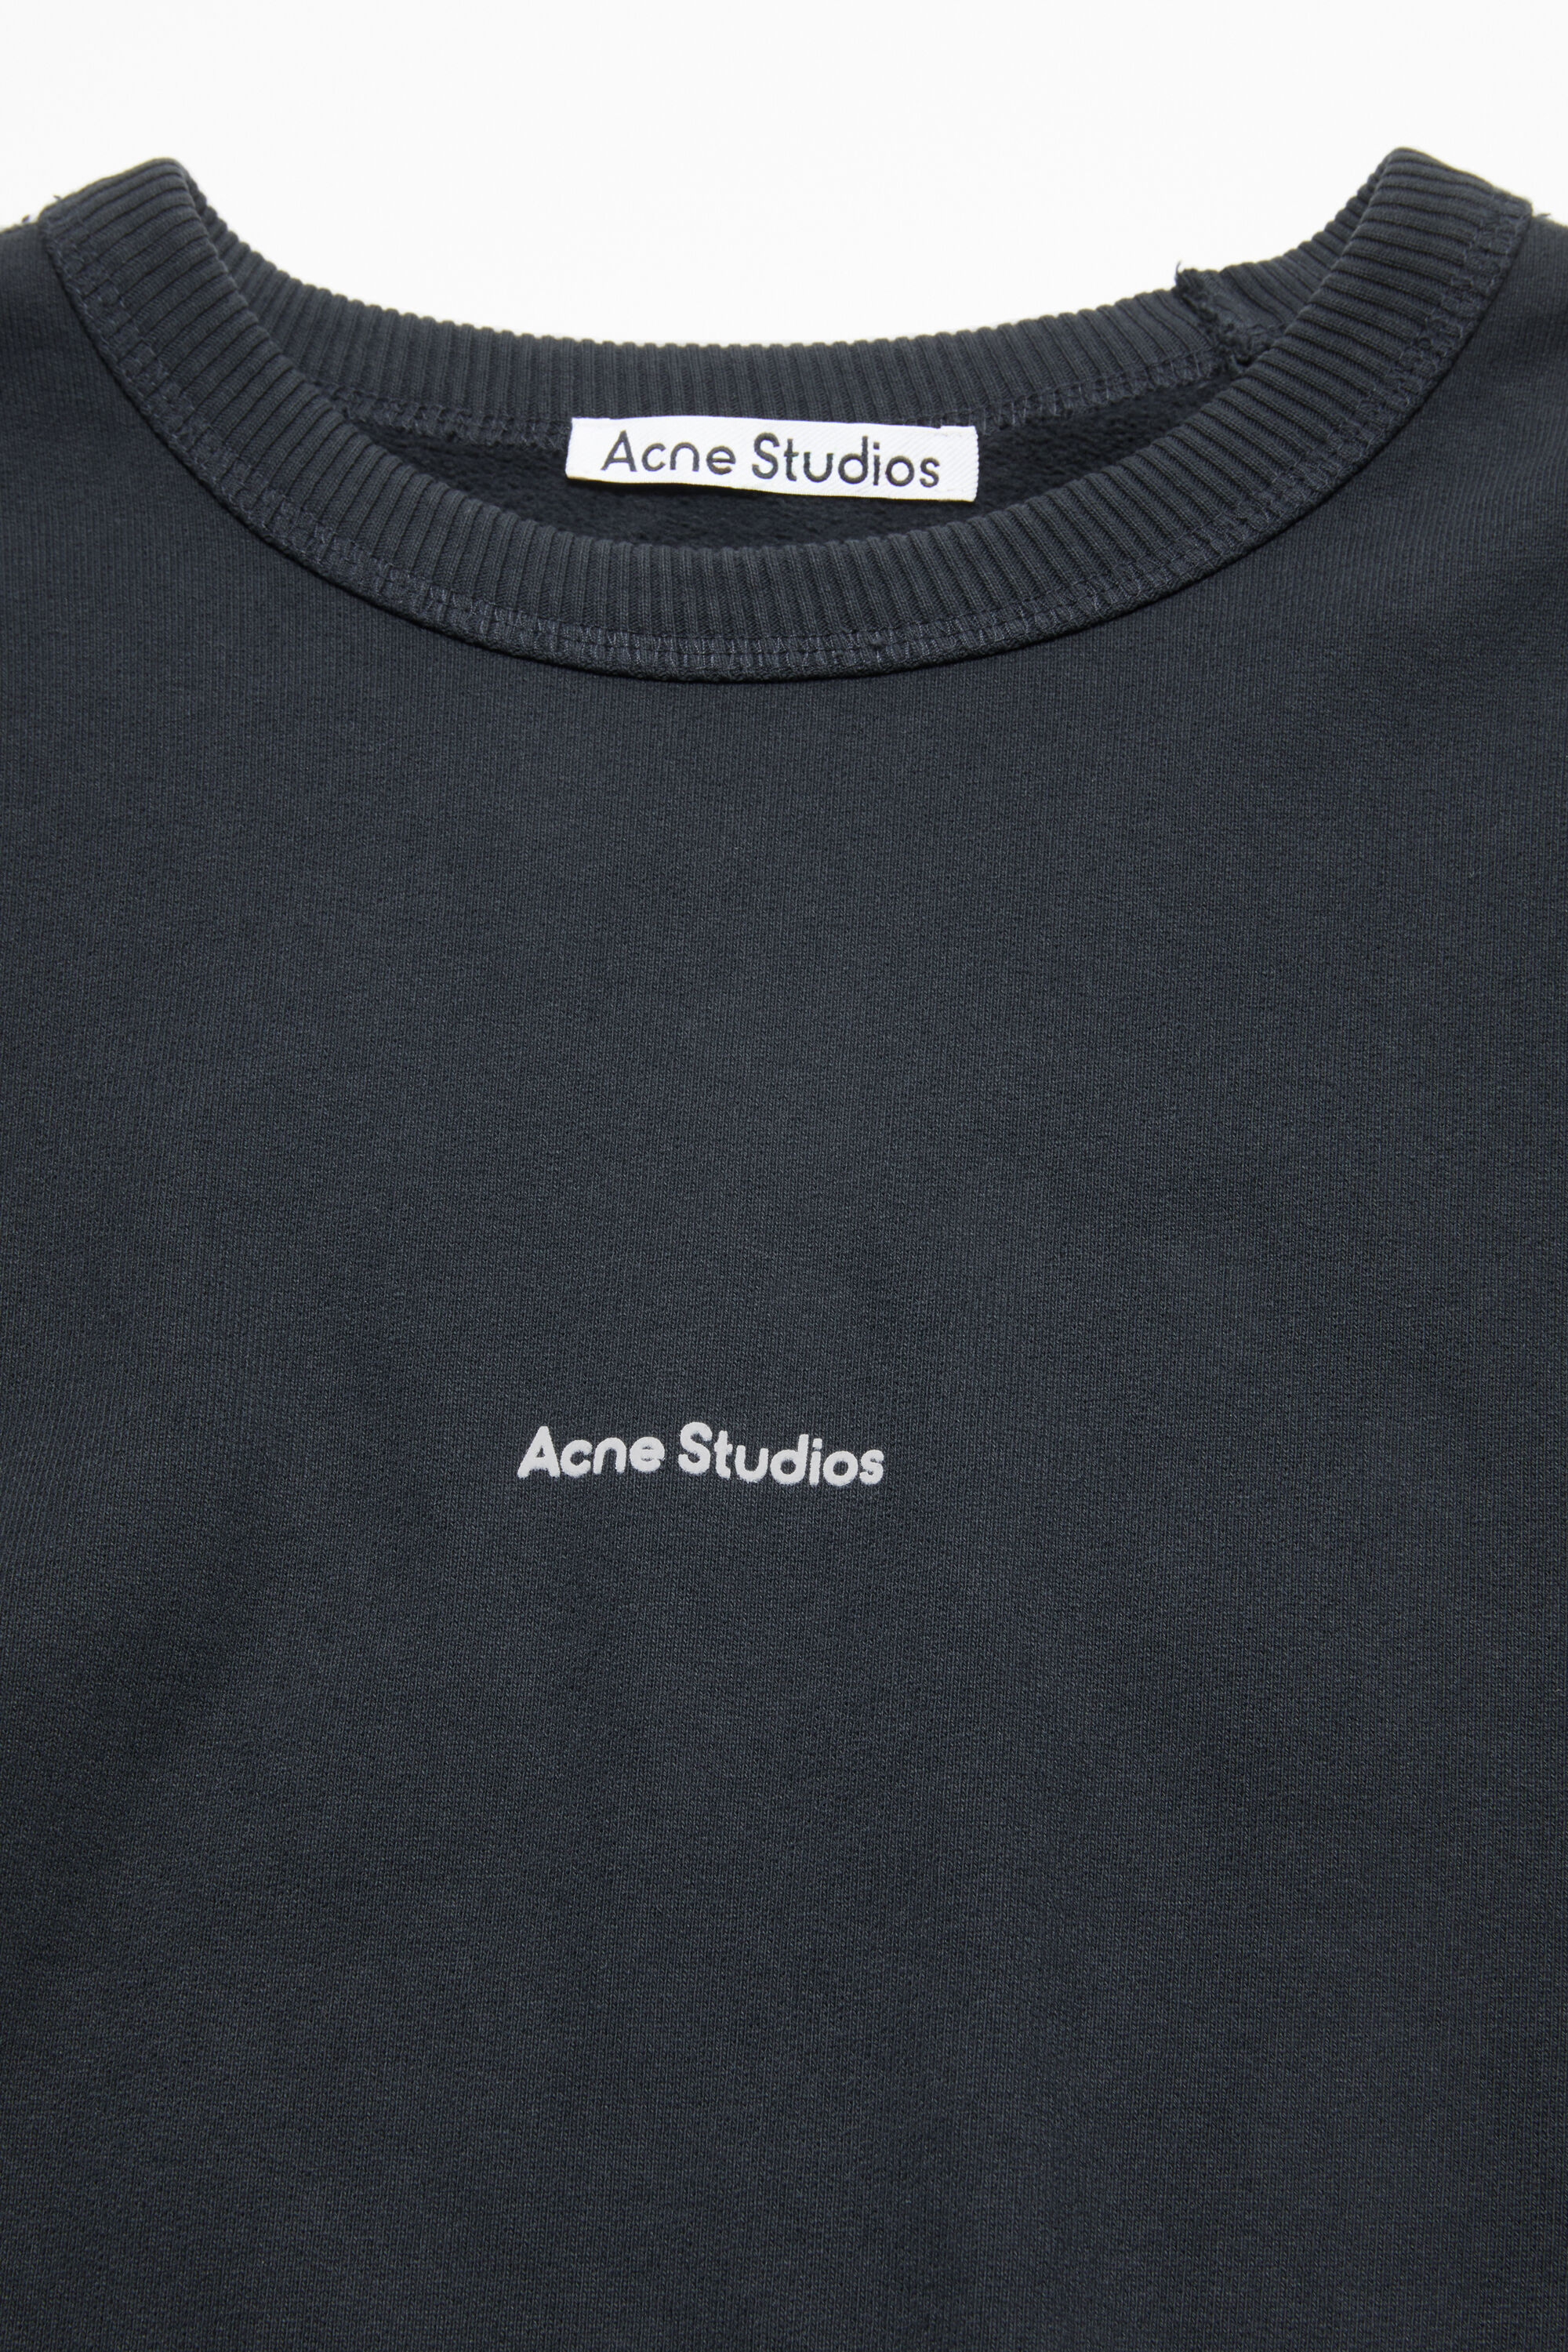 Acne Studios 名作ロゴスウェット XS